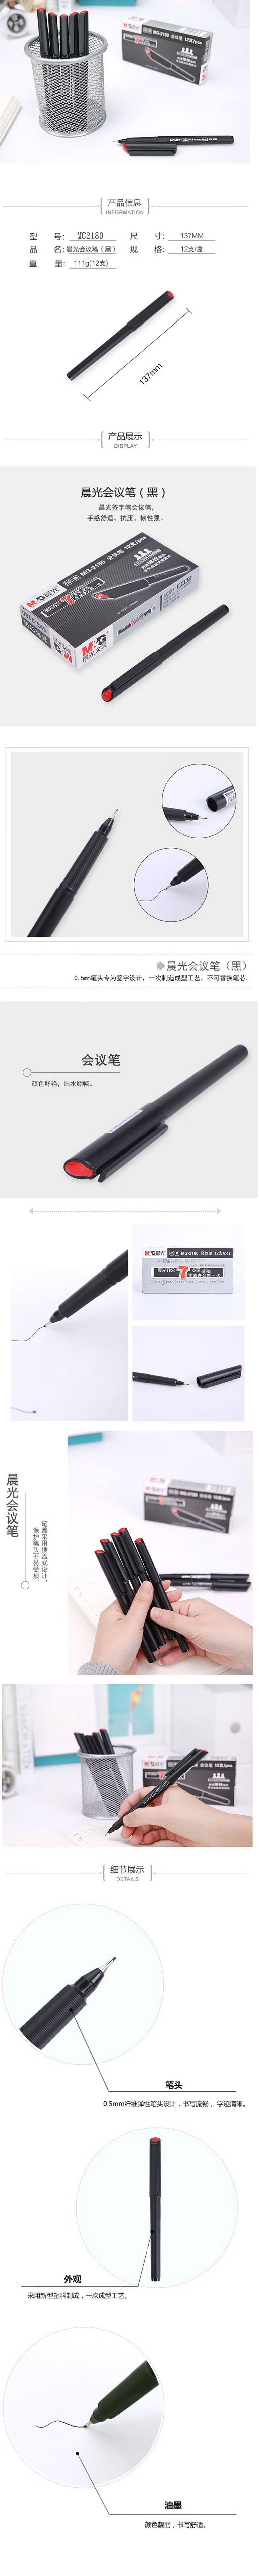 晨光 会议笔 MG-2180 ASP21801 0.5mm 纤维笔头 插盖式 单头 黑色